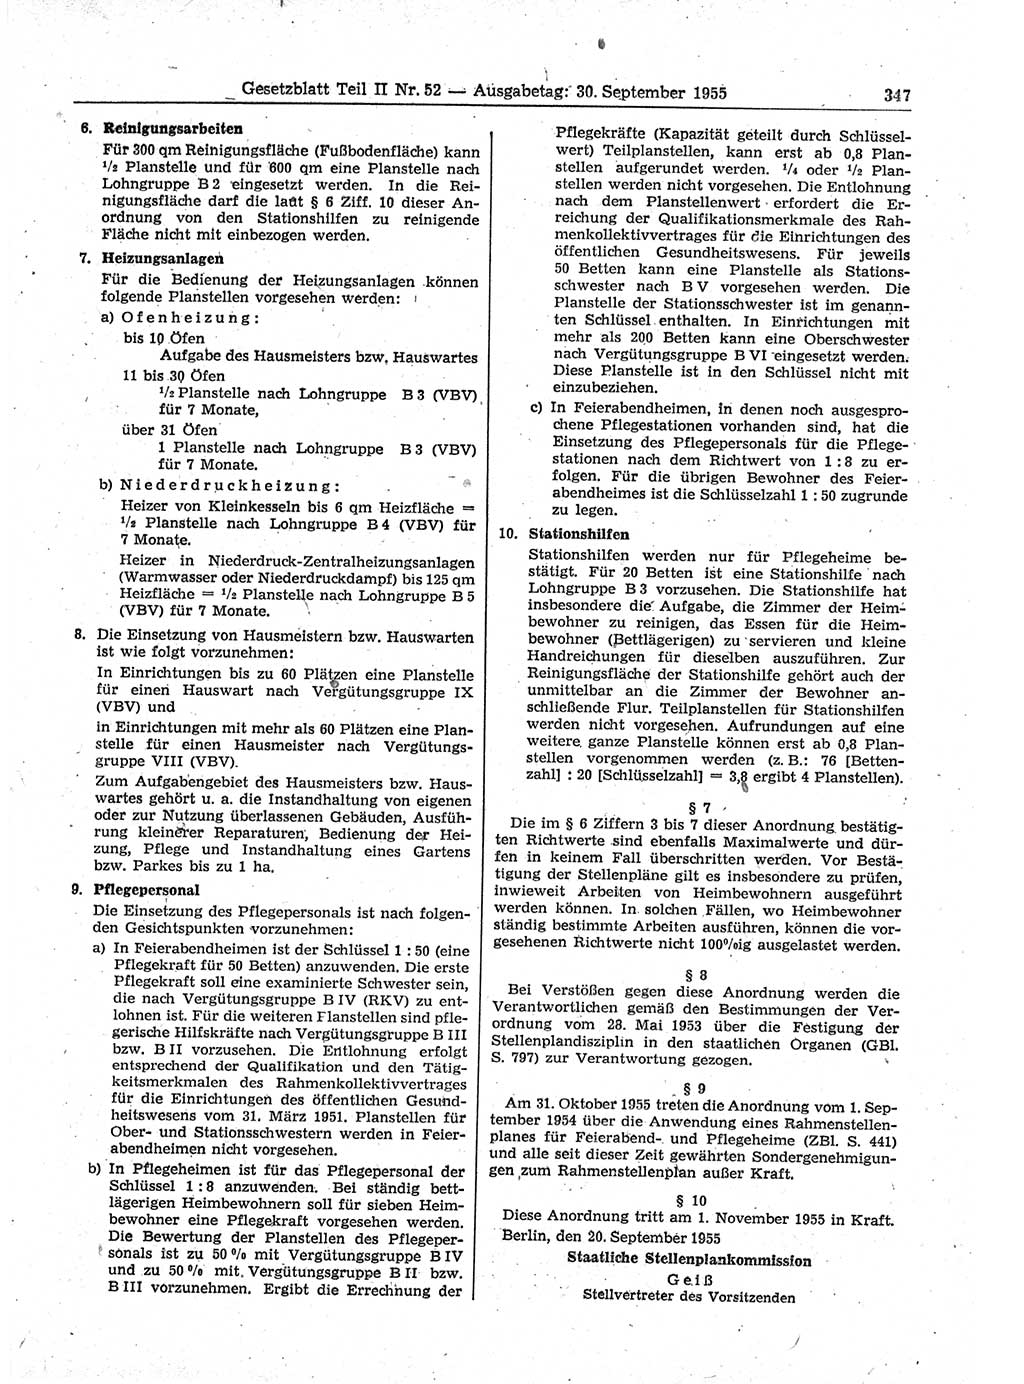 Gesetzblatt (GBl.) der Deutschen Demokratischen Republik (DDR) Teil ⅠⅠ 1955, Seite 347 (GBl. DDR ⅠⅠ 1955, S. 347)